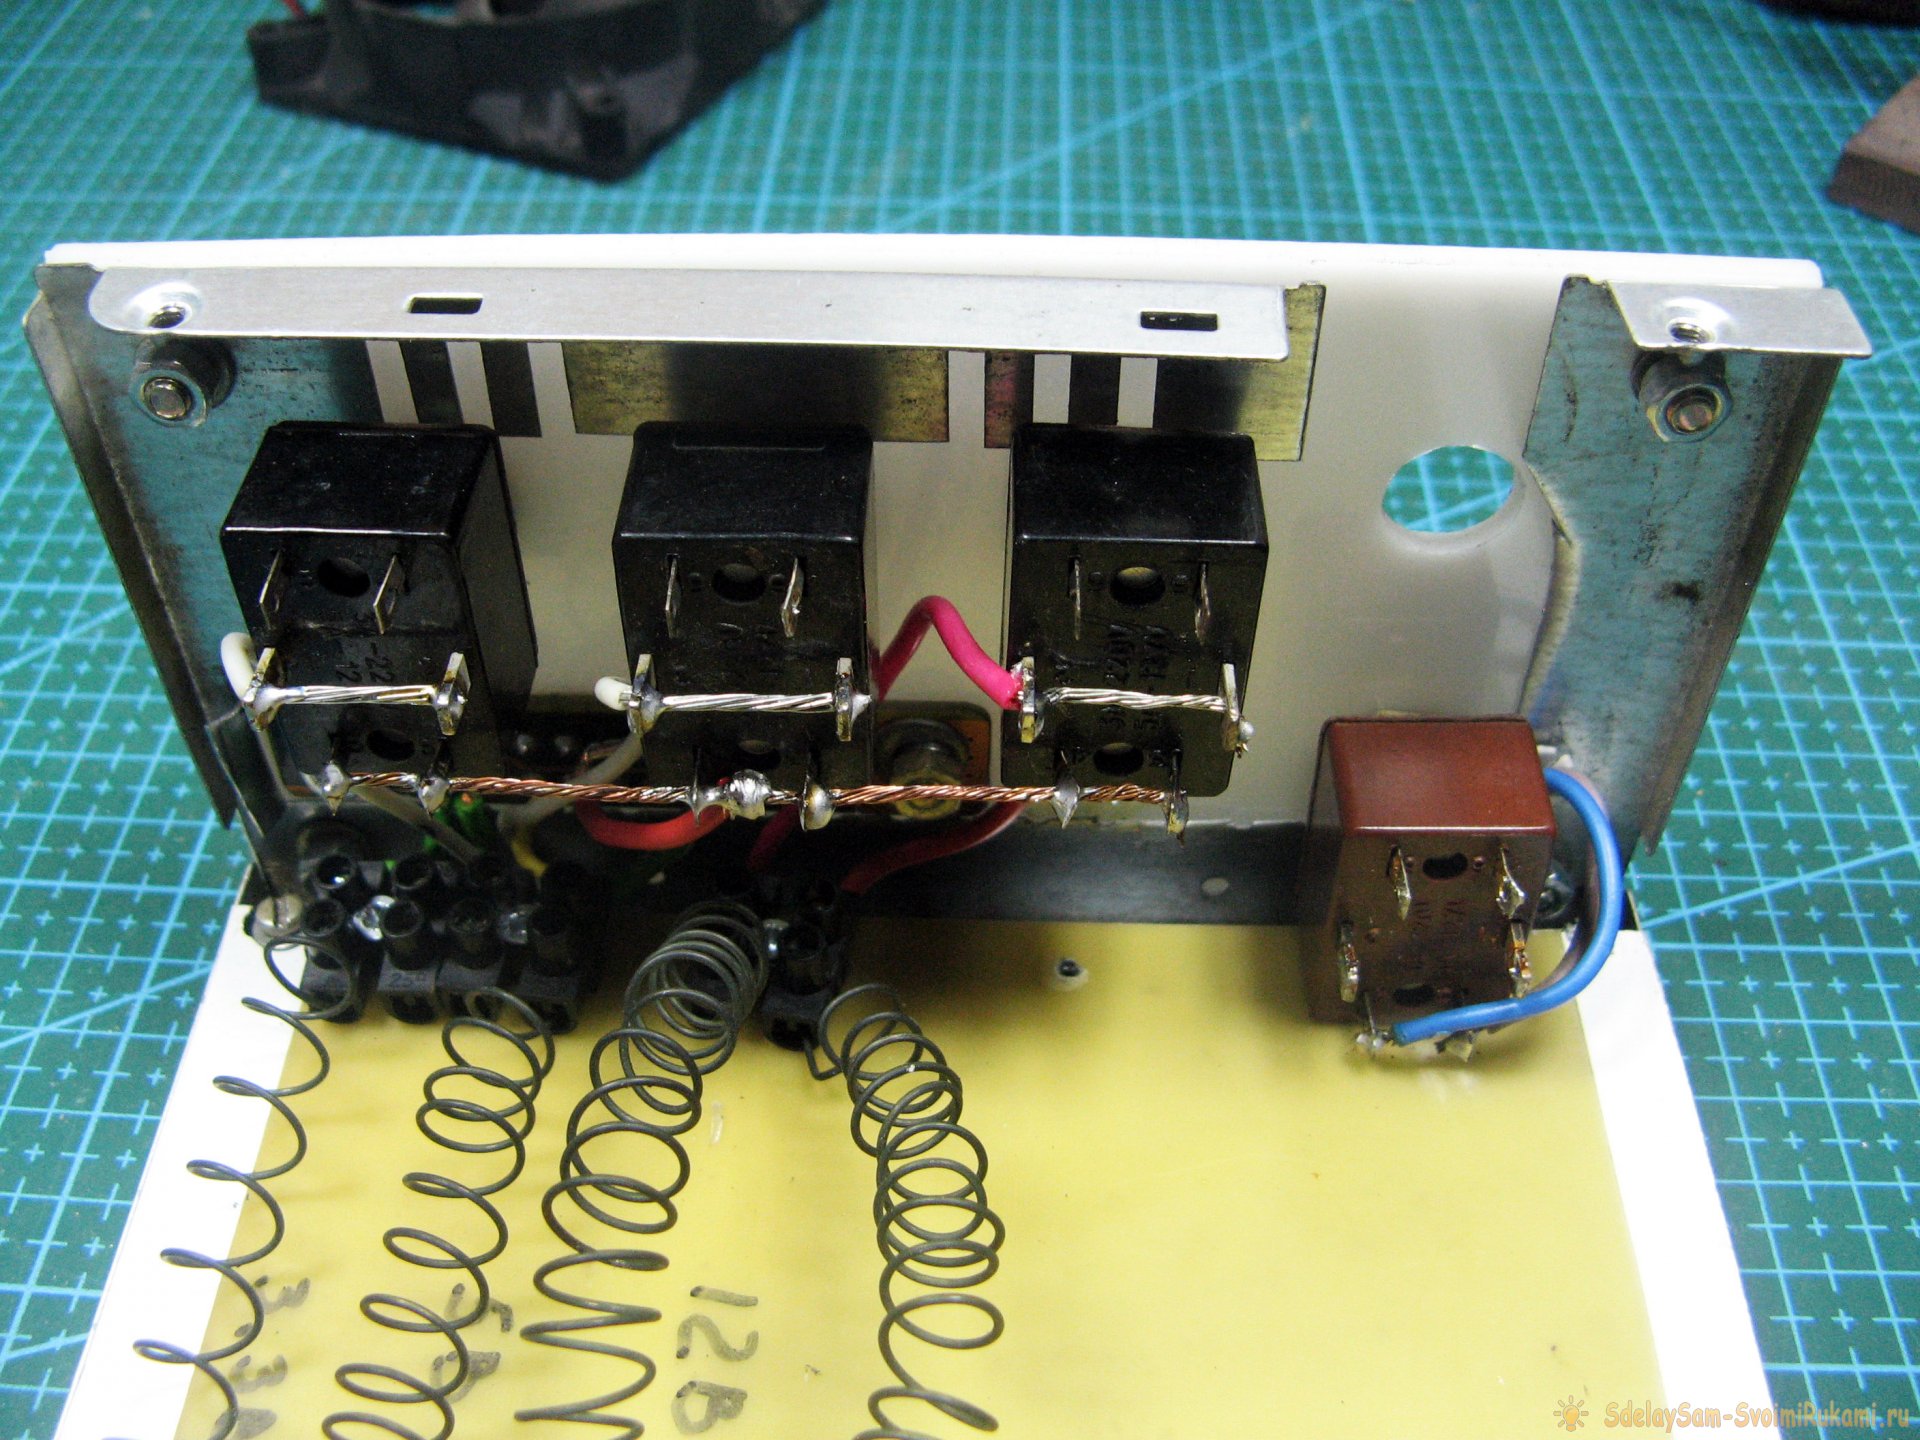 «Нагружатор» - крайне необходимый и нужный прибор для ремонта электроники